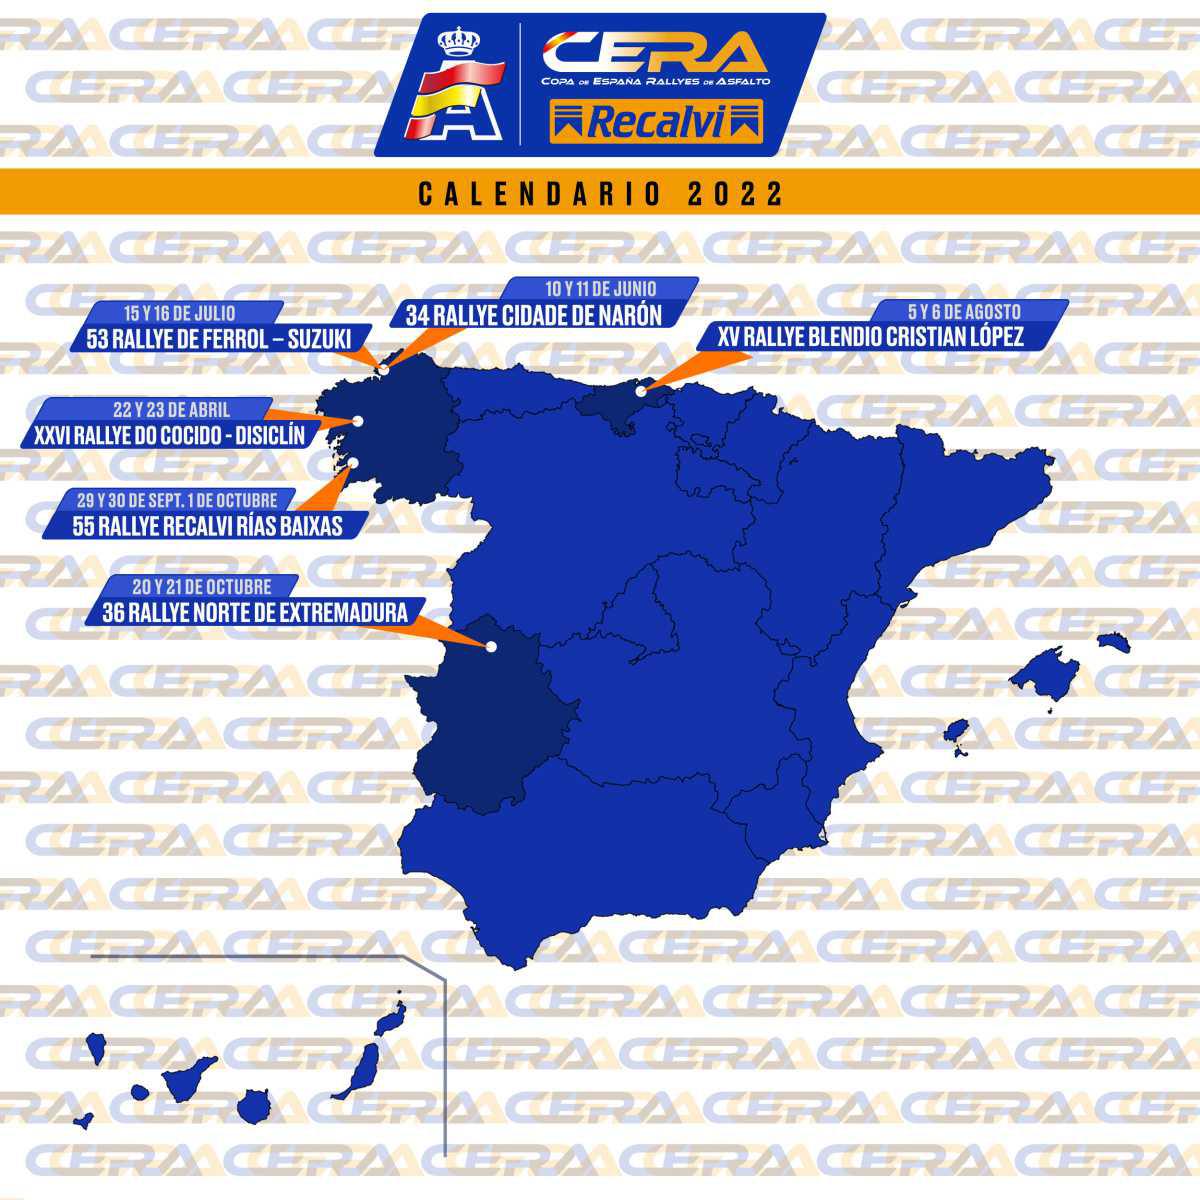 La CERA - Recalvi 2022, con calendario propio y cuatro rallyes en Galicia